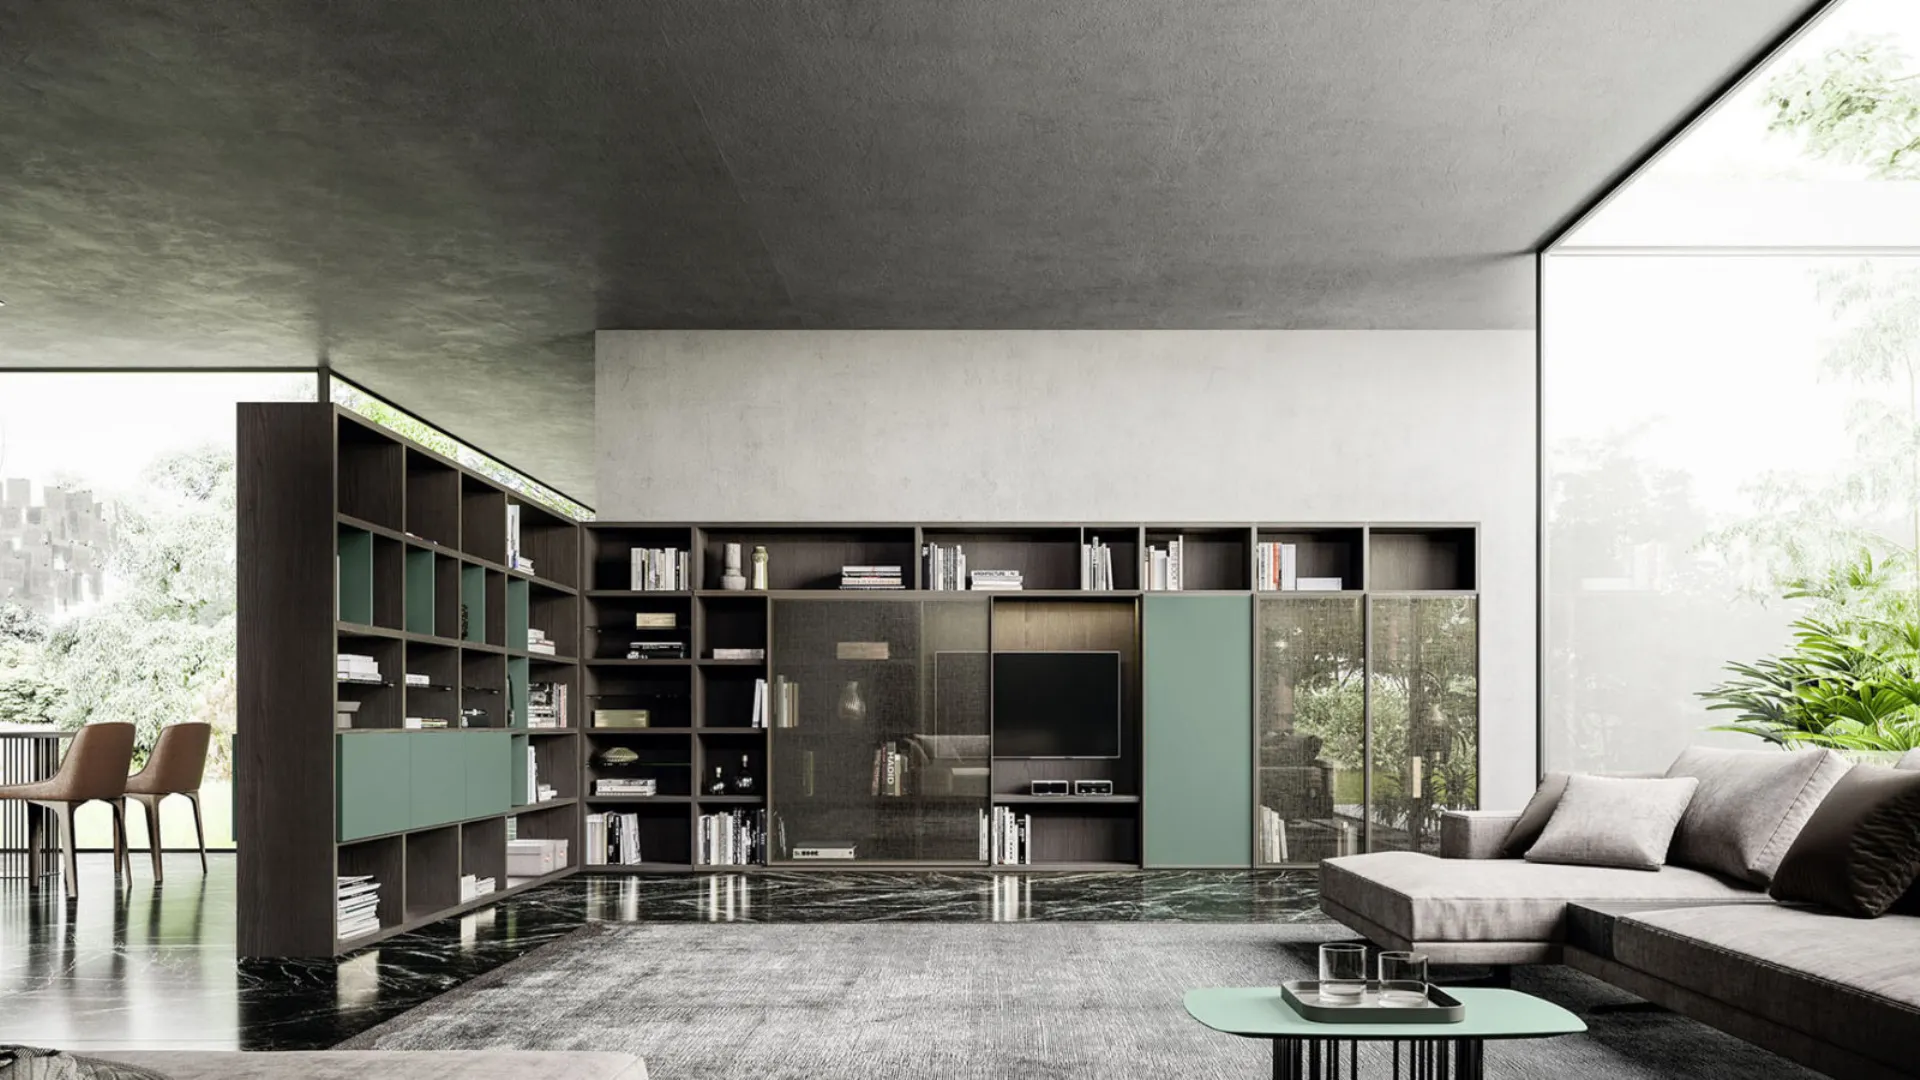 La libreria diviene una parte integrante dell’architettura d’interni